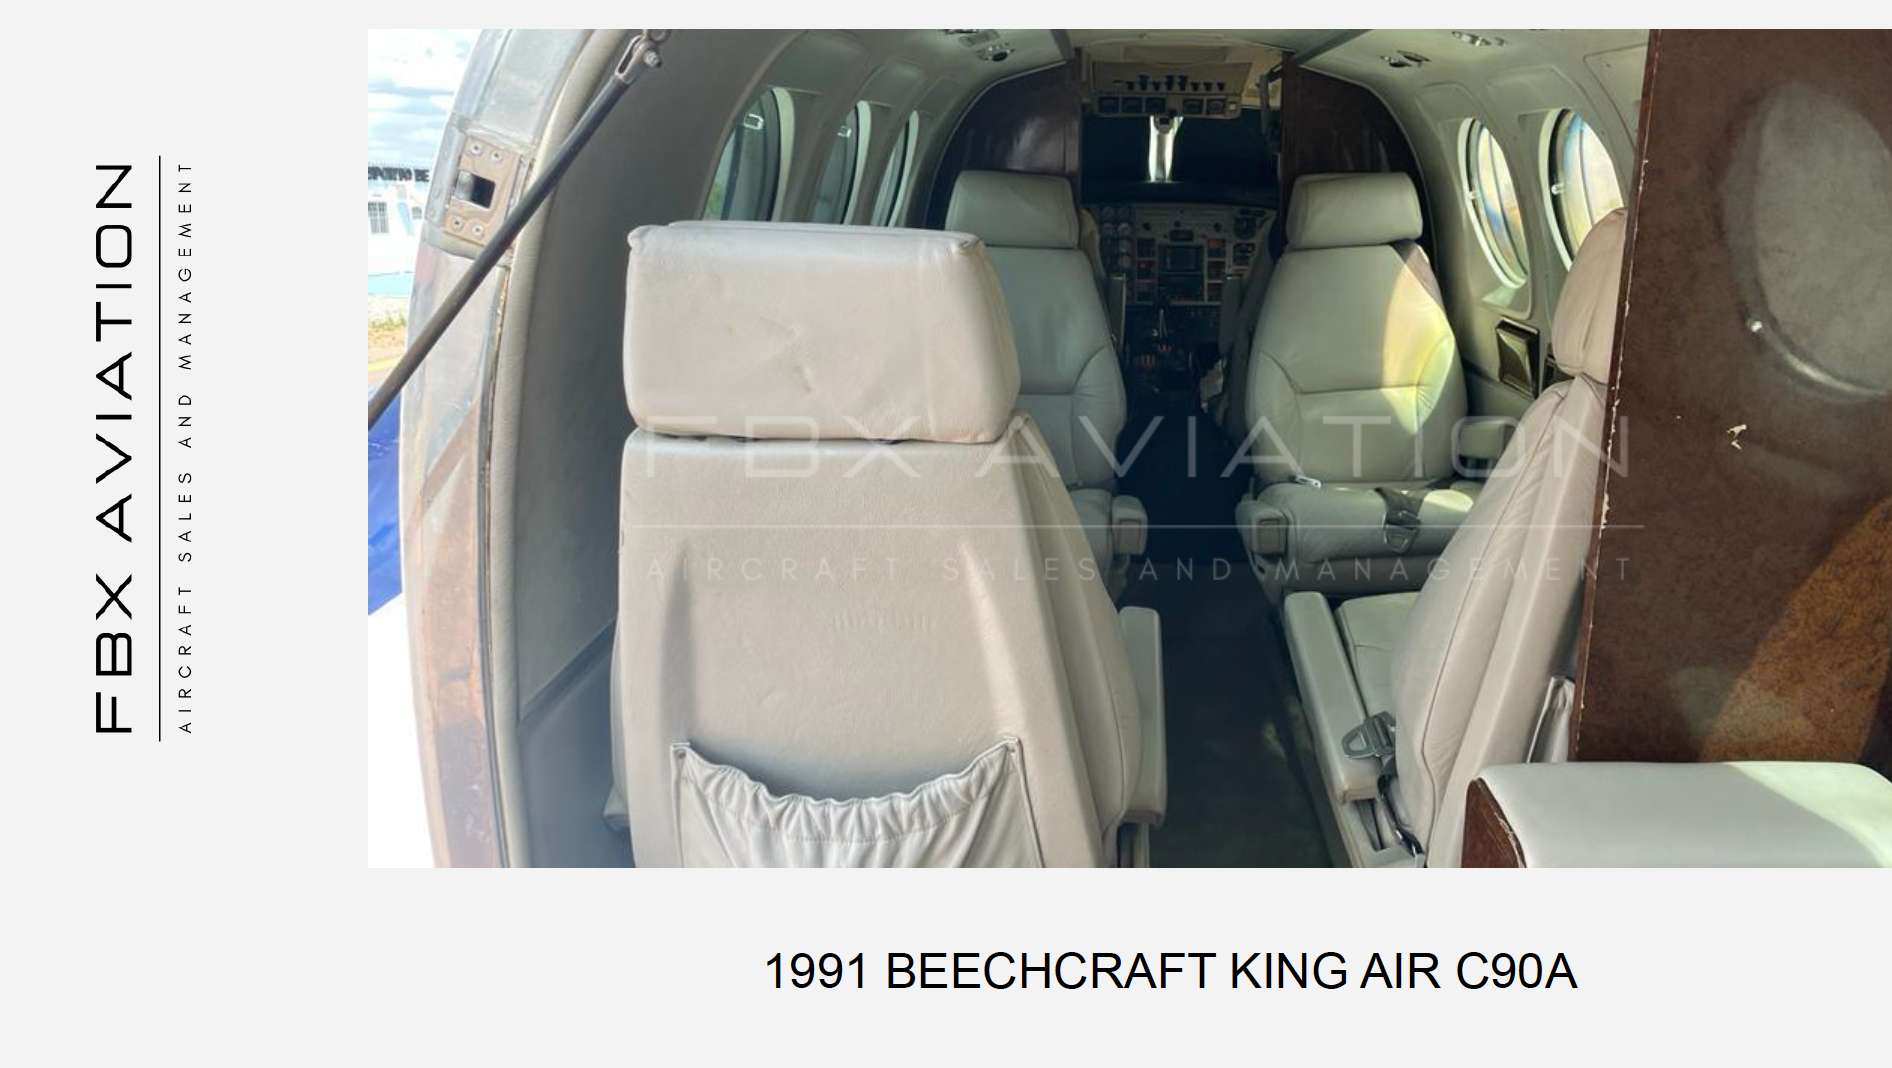 BEECHCRAFT KING AIR C90A 1992